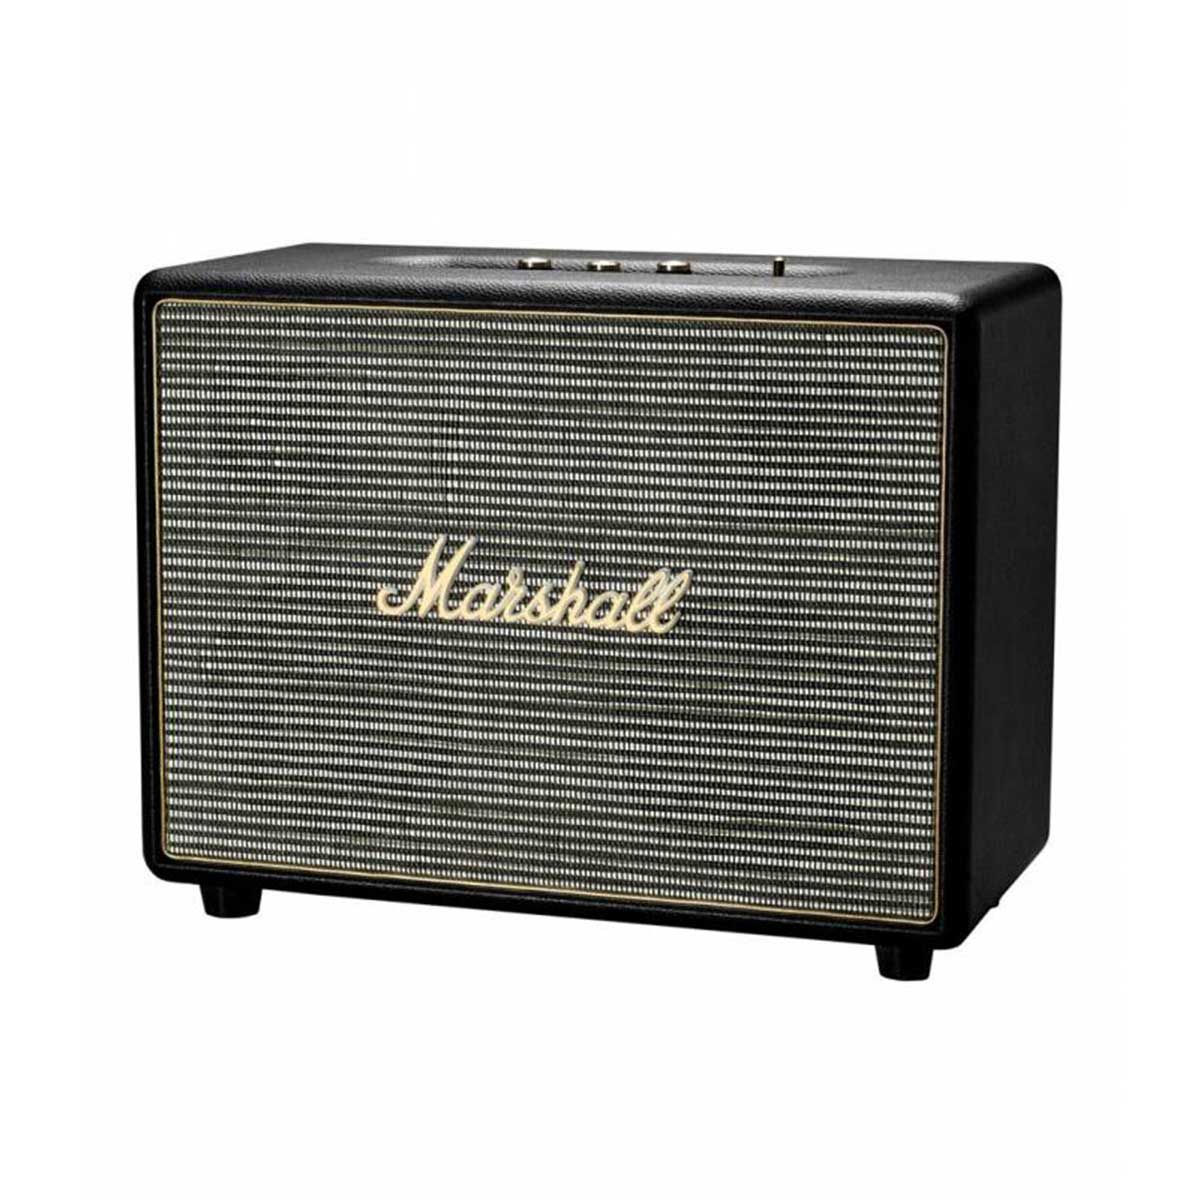 Marshall - Woburn II Black Bluetooth Speaker  - Black